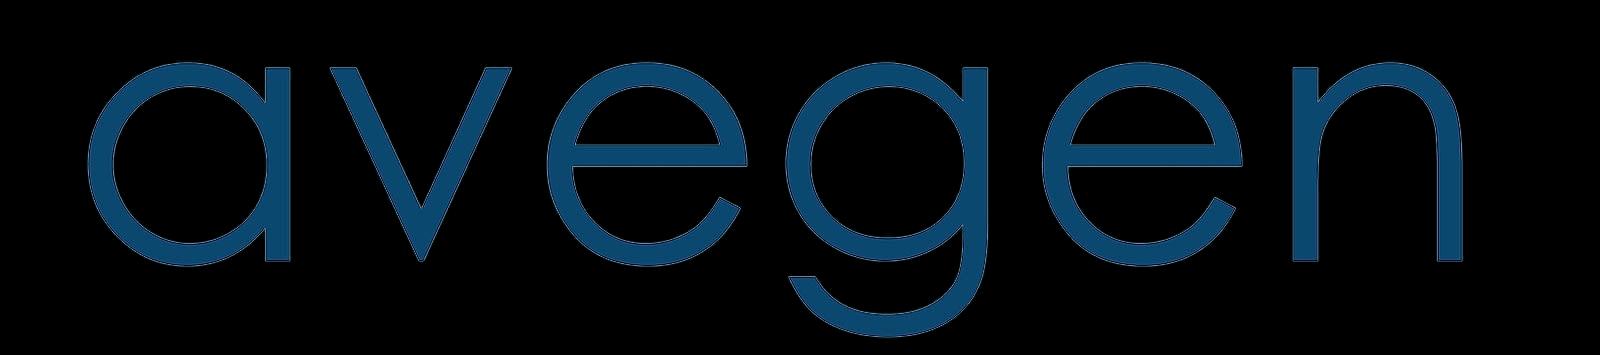 Avegen_logo